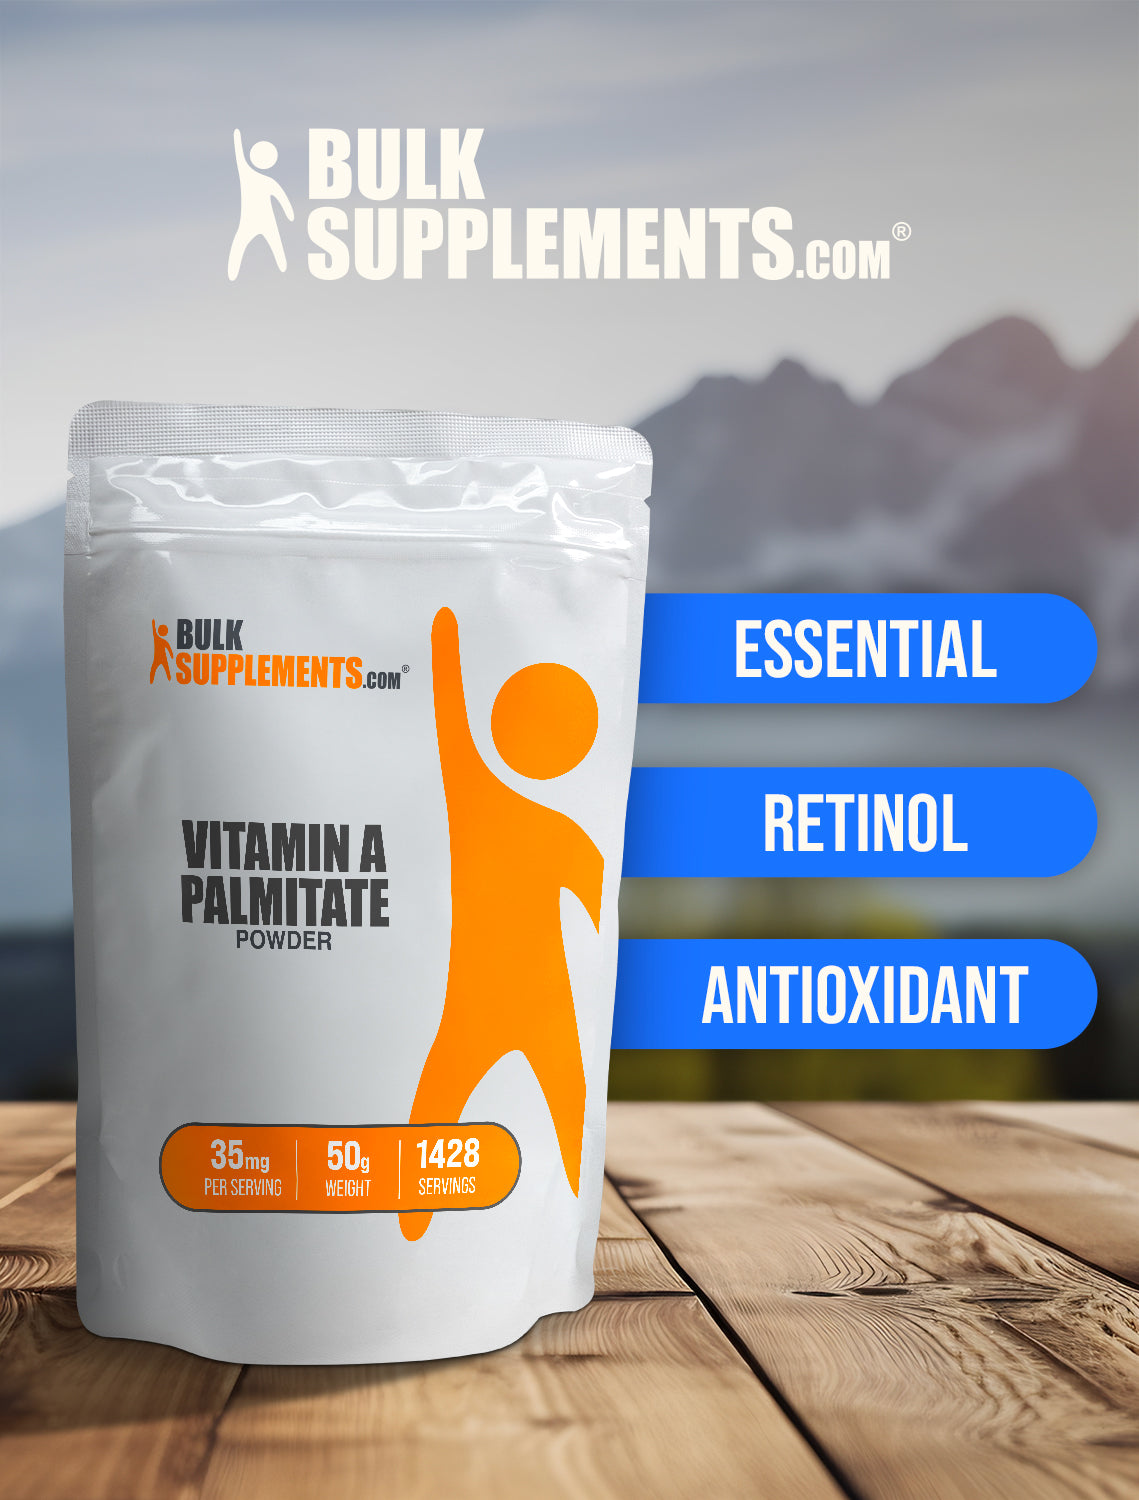 Vitamin A Palmitate powder keyword image 50g